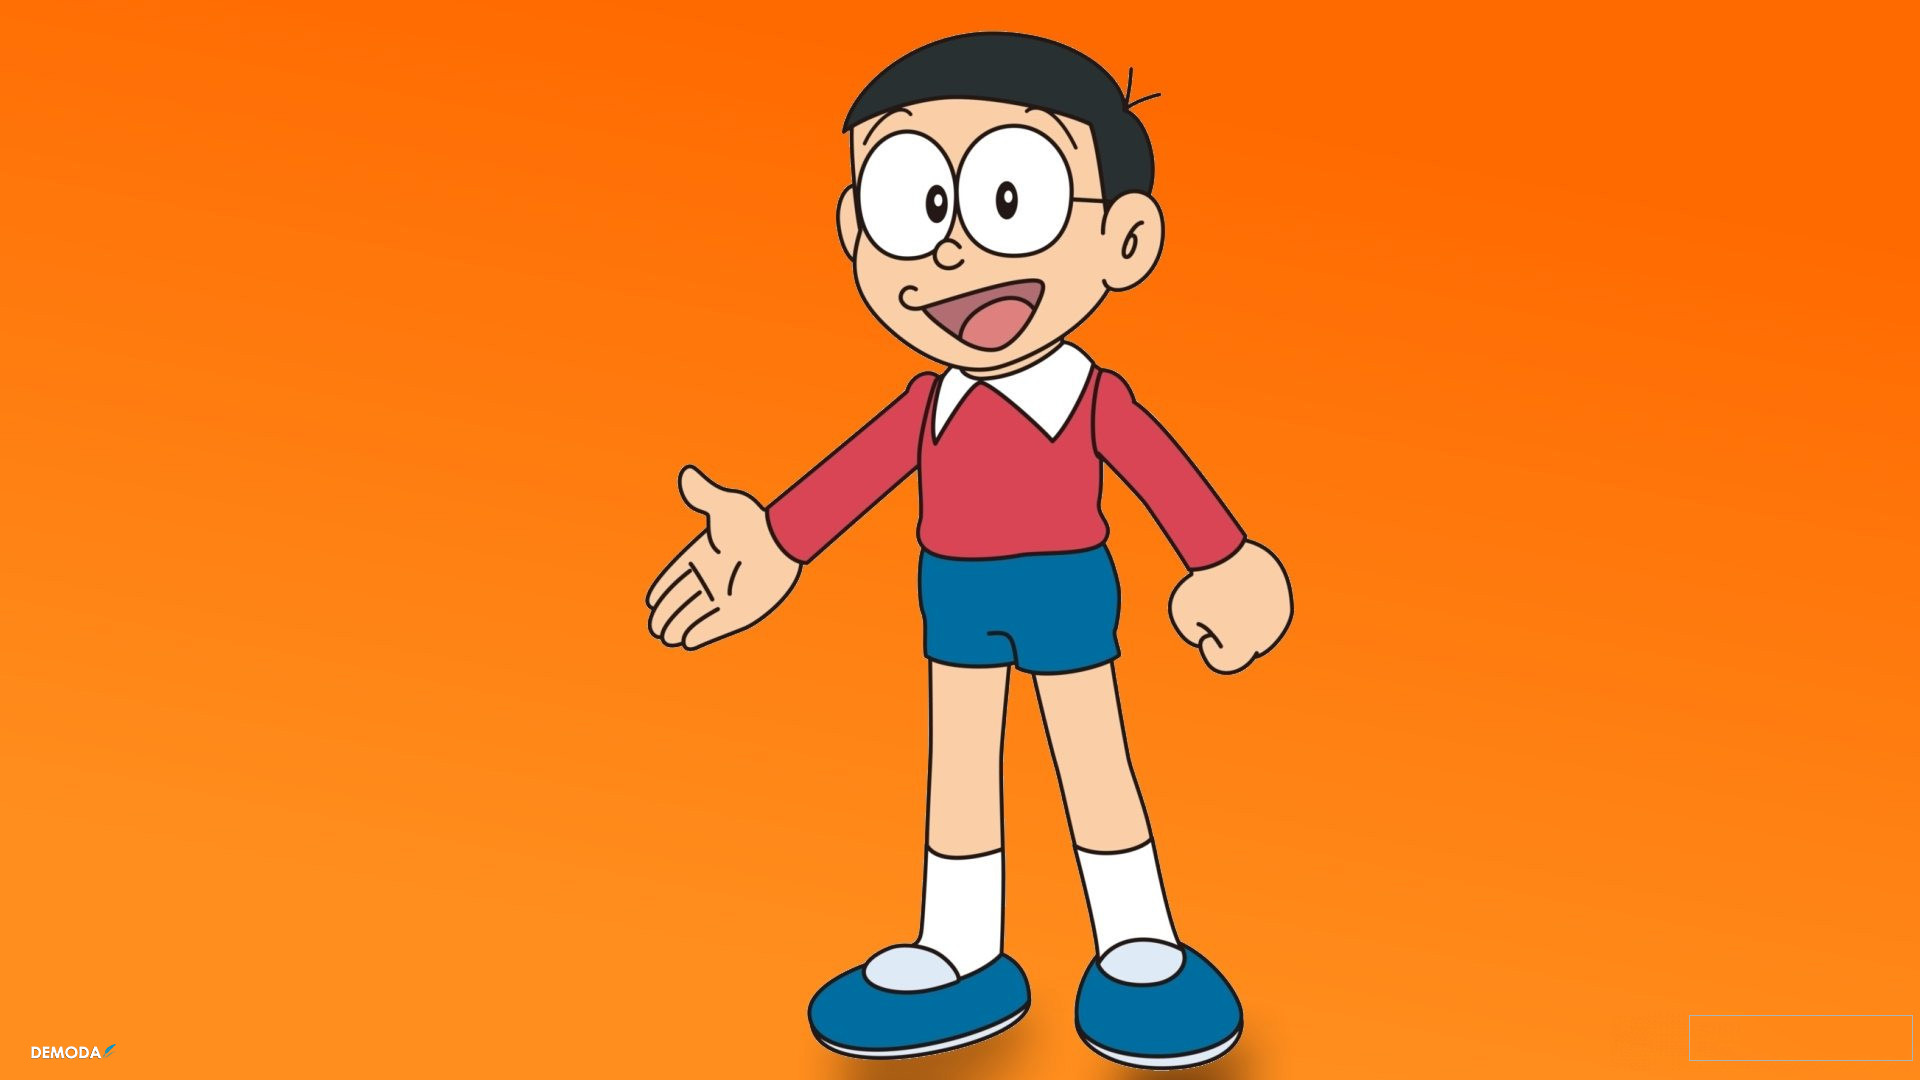 Ảnh Nobita: Nobita là một nhân vật quan trọng và là người bạn thân thiết nhất của Doremon. Với tính cách hiền lành và thích tưởng tượng, Nobita luôn làm hài lòng người xem. Bạn hãy xem những hình ảnh của Nobita để tìm hiểu thêm về anh chàng này.